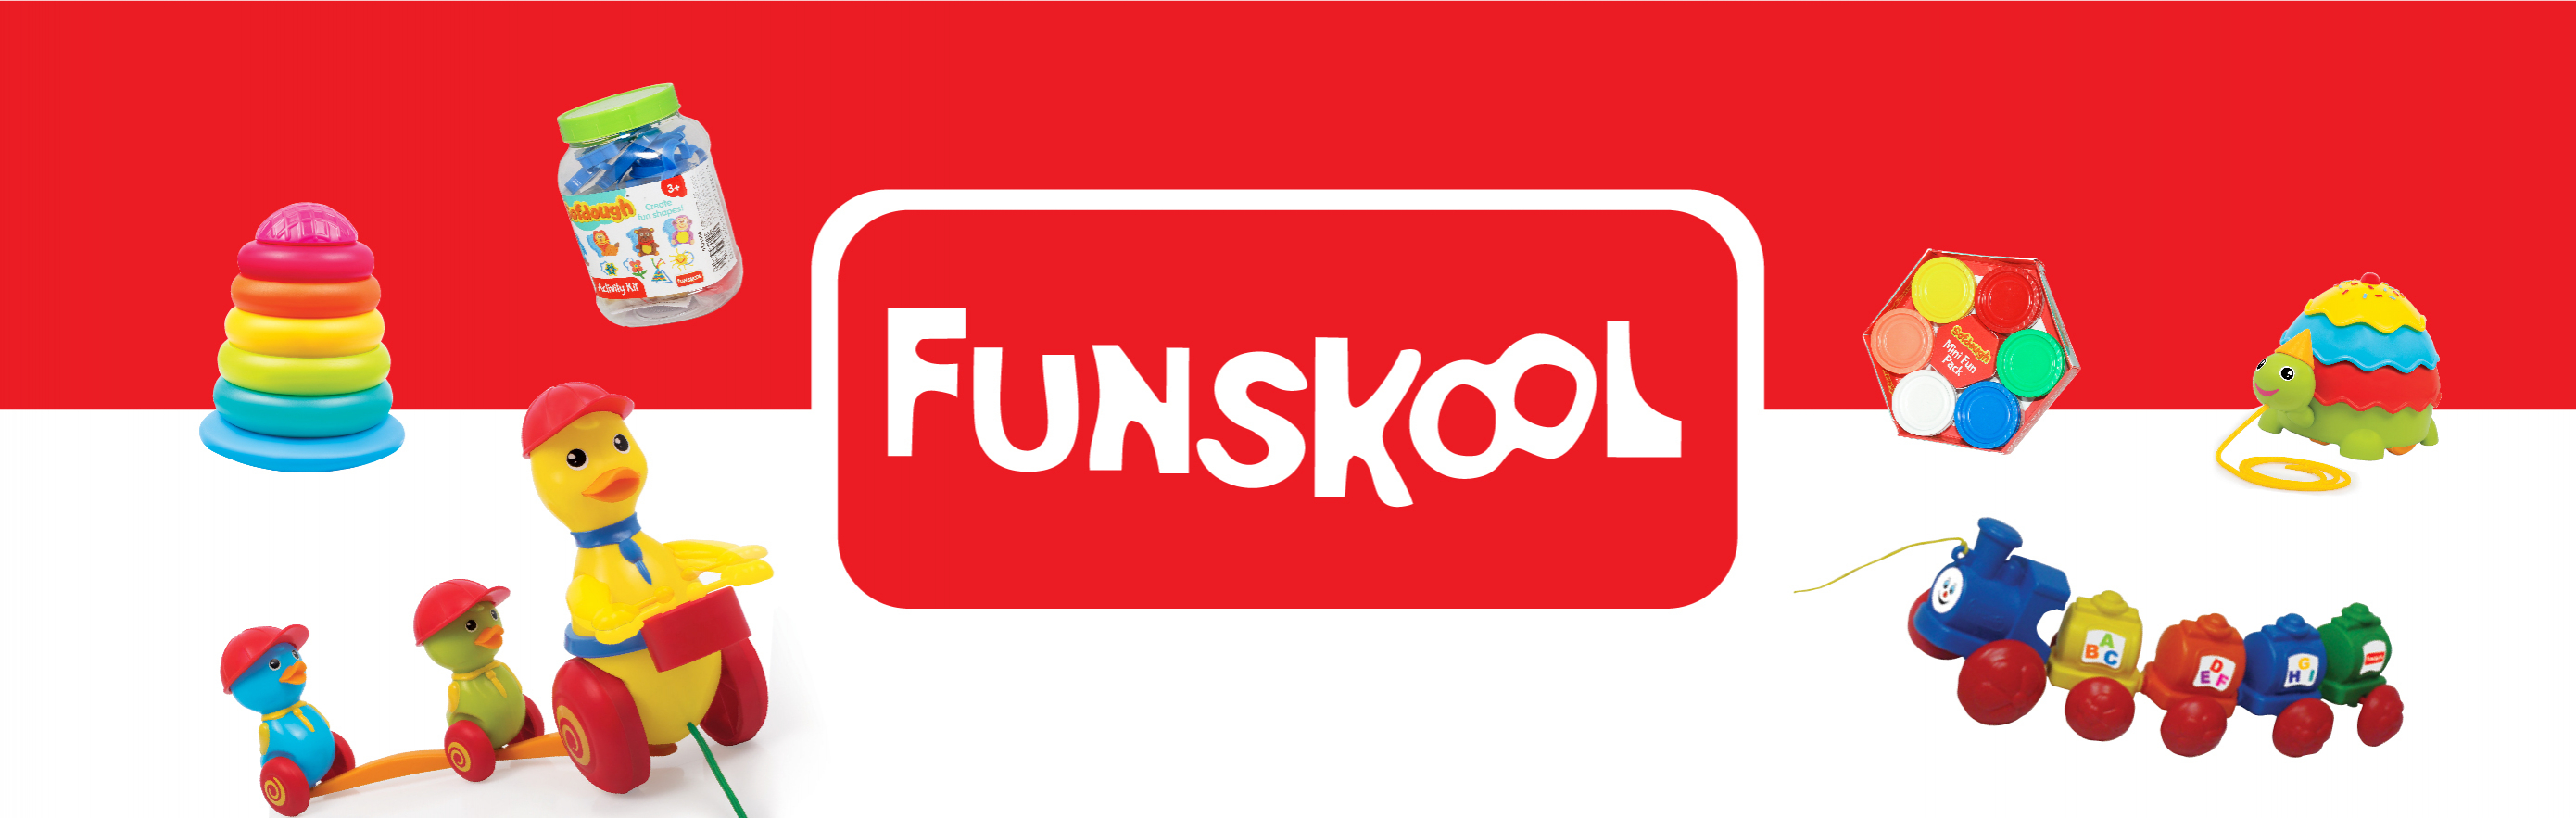 FunSkool